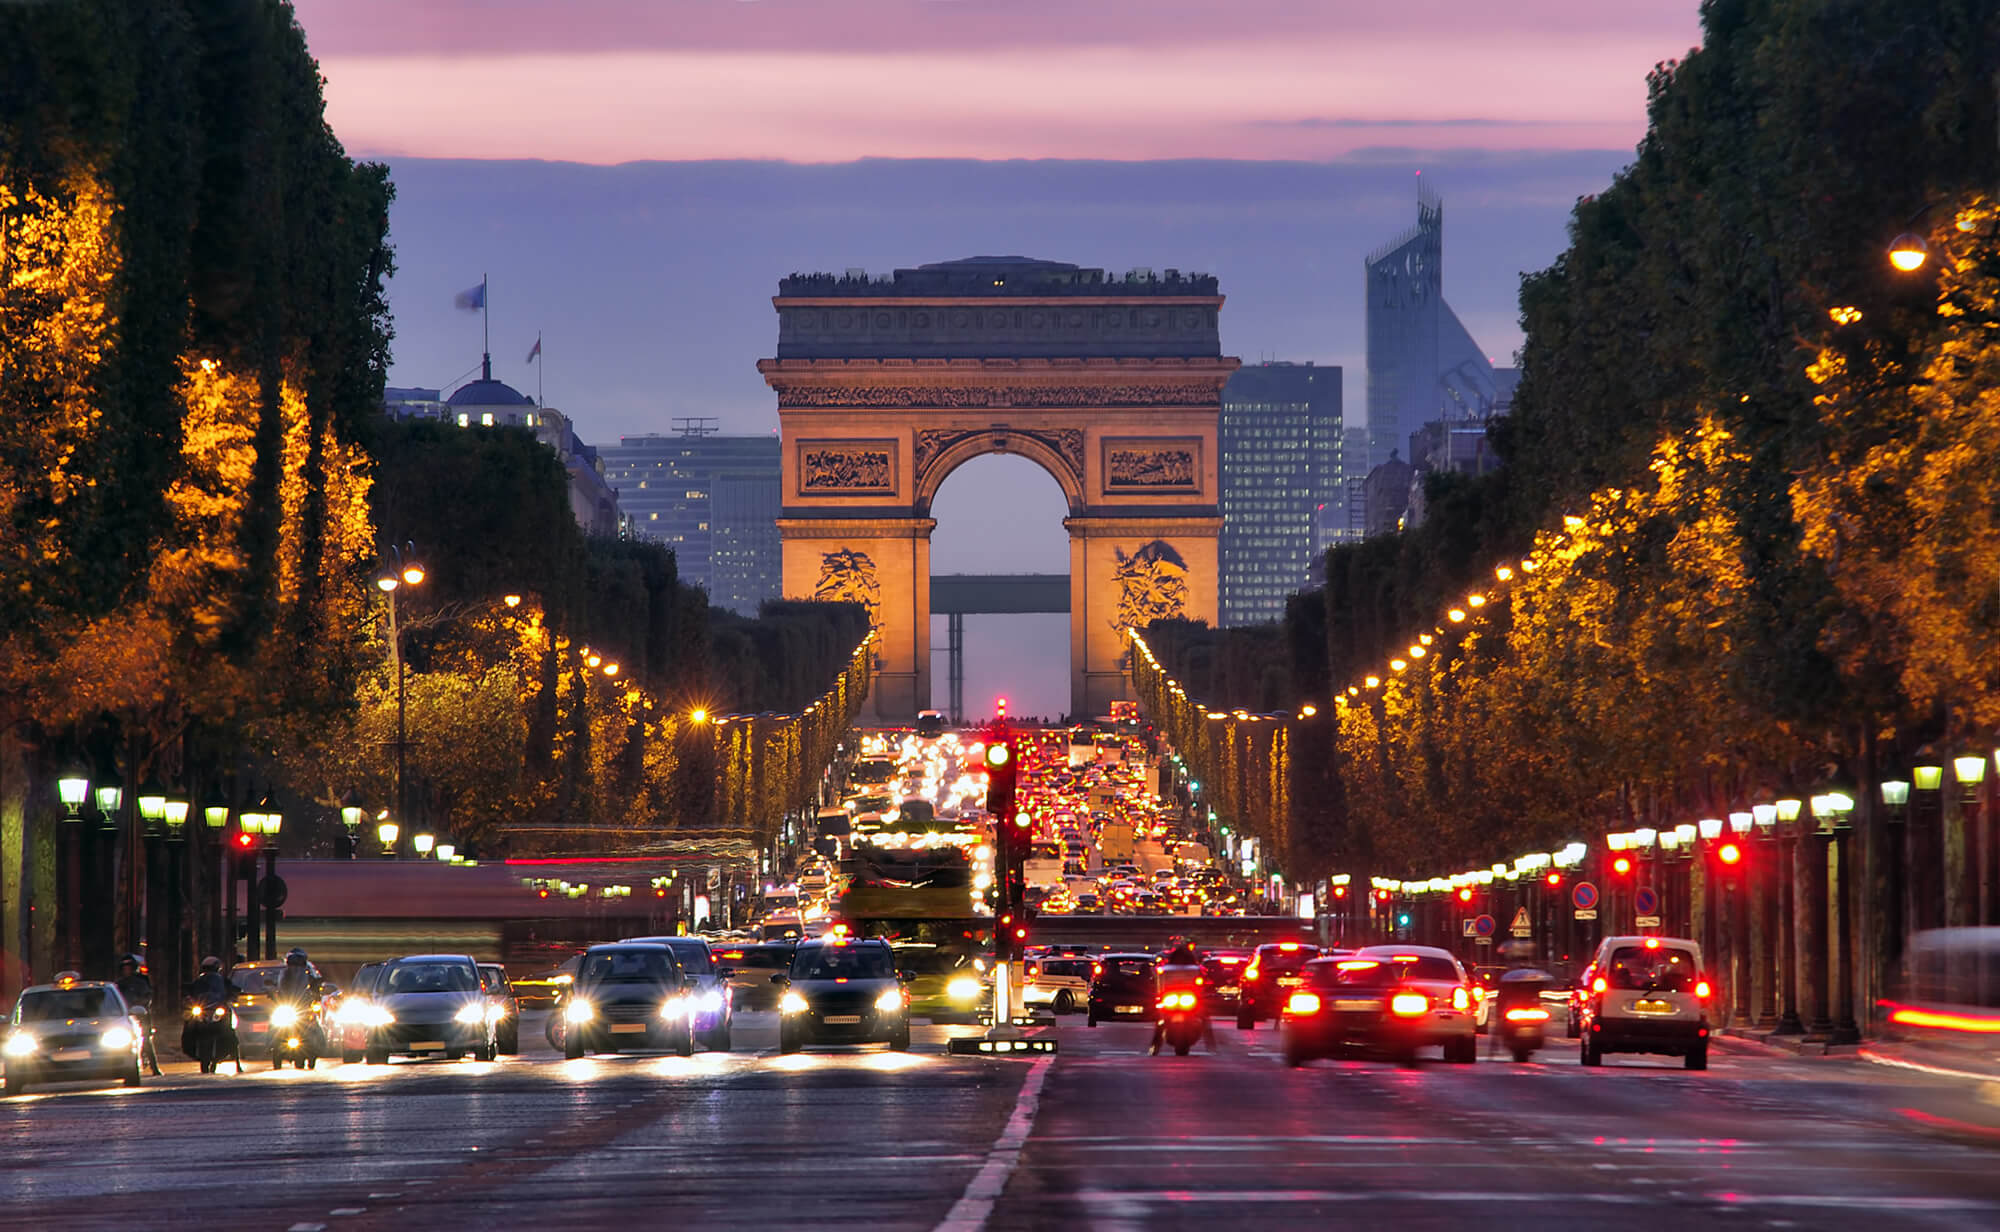 France's Top 10 Destinations